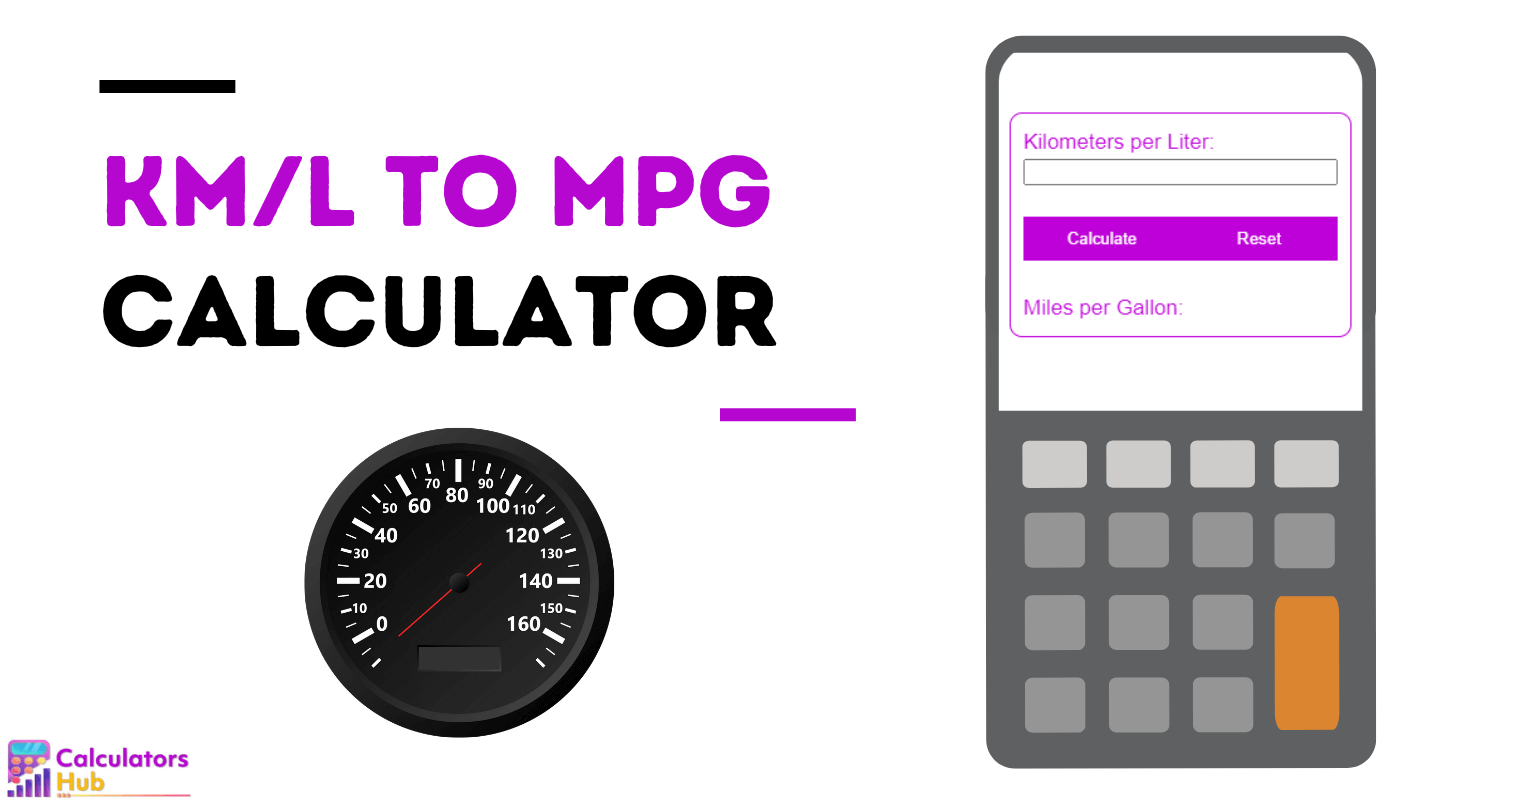 Calculadora de km/l para mpg